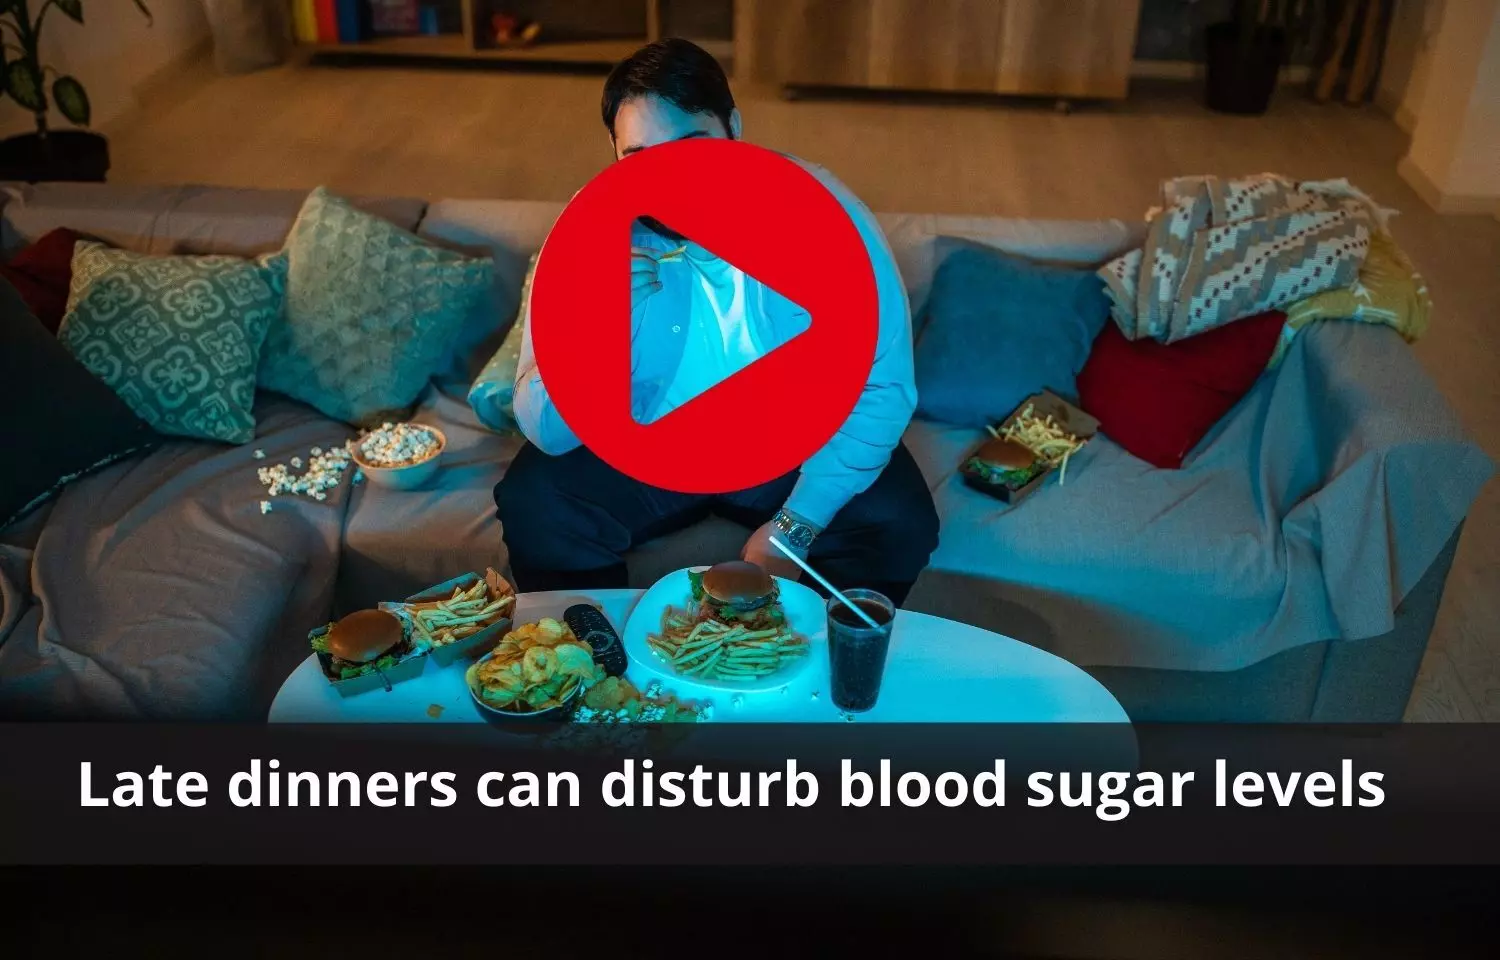 Improper dinner timing to affect blood sugar levels